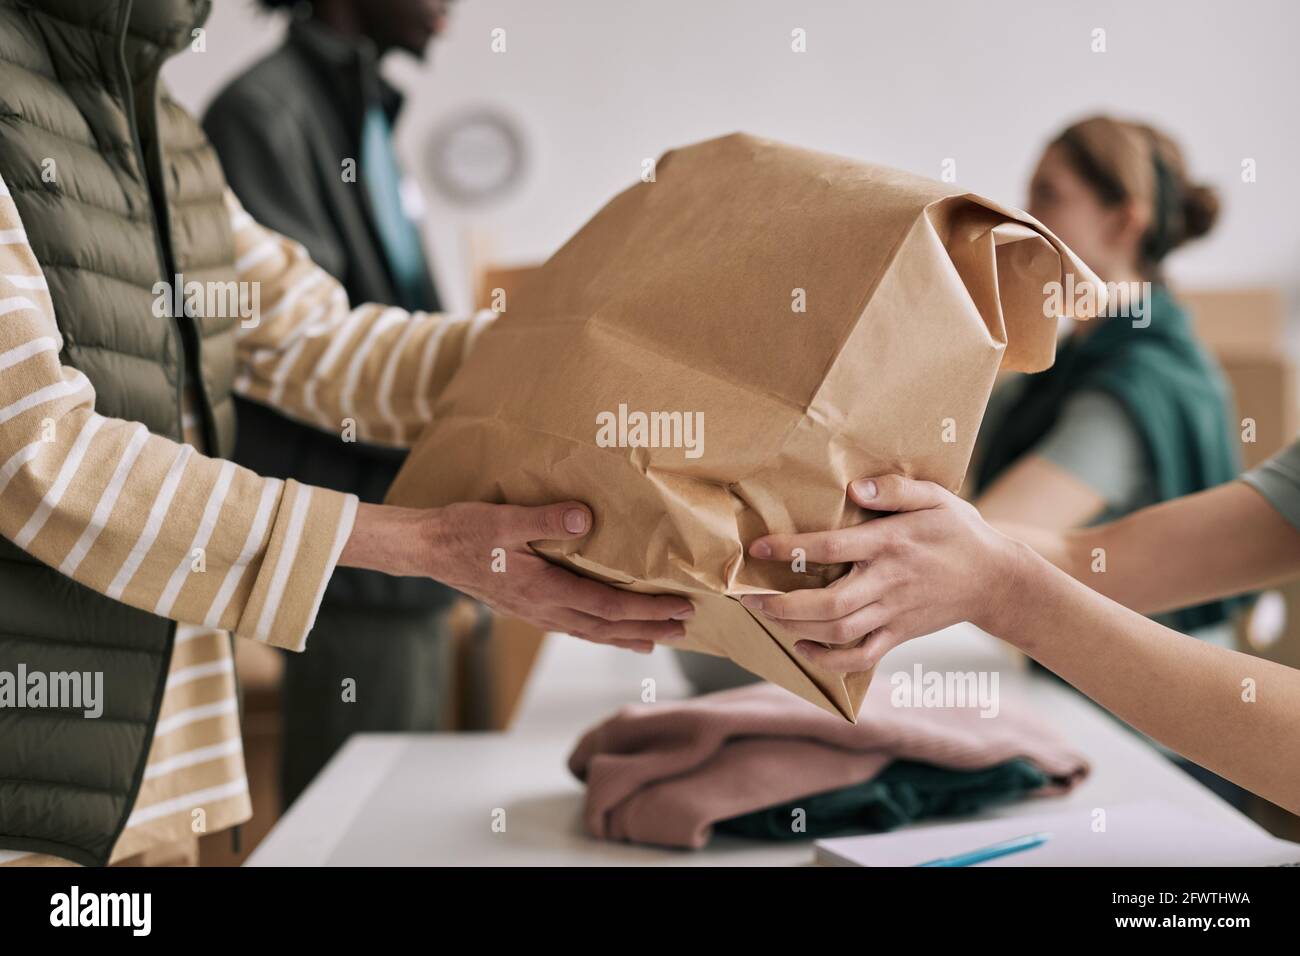 Gros plan d'une personne méconnue qui donne un sac en papier aux bénévoles pendant l'événement d'aide et de dons, espace de copie Banque D'Images